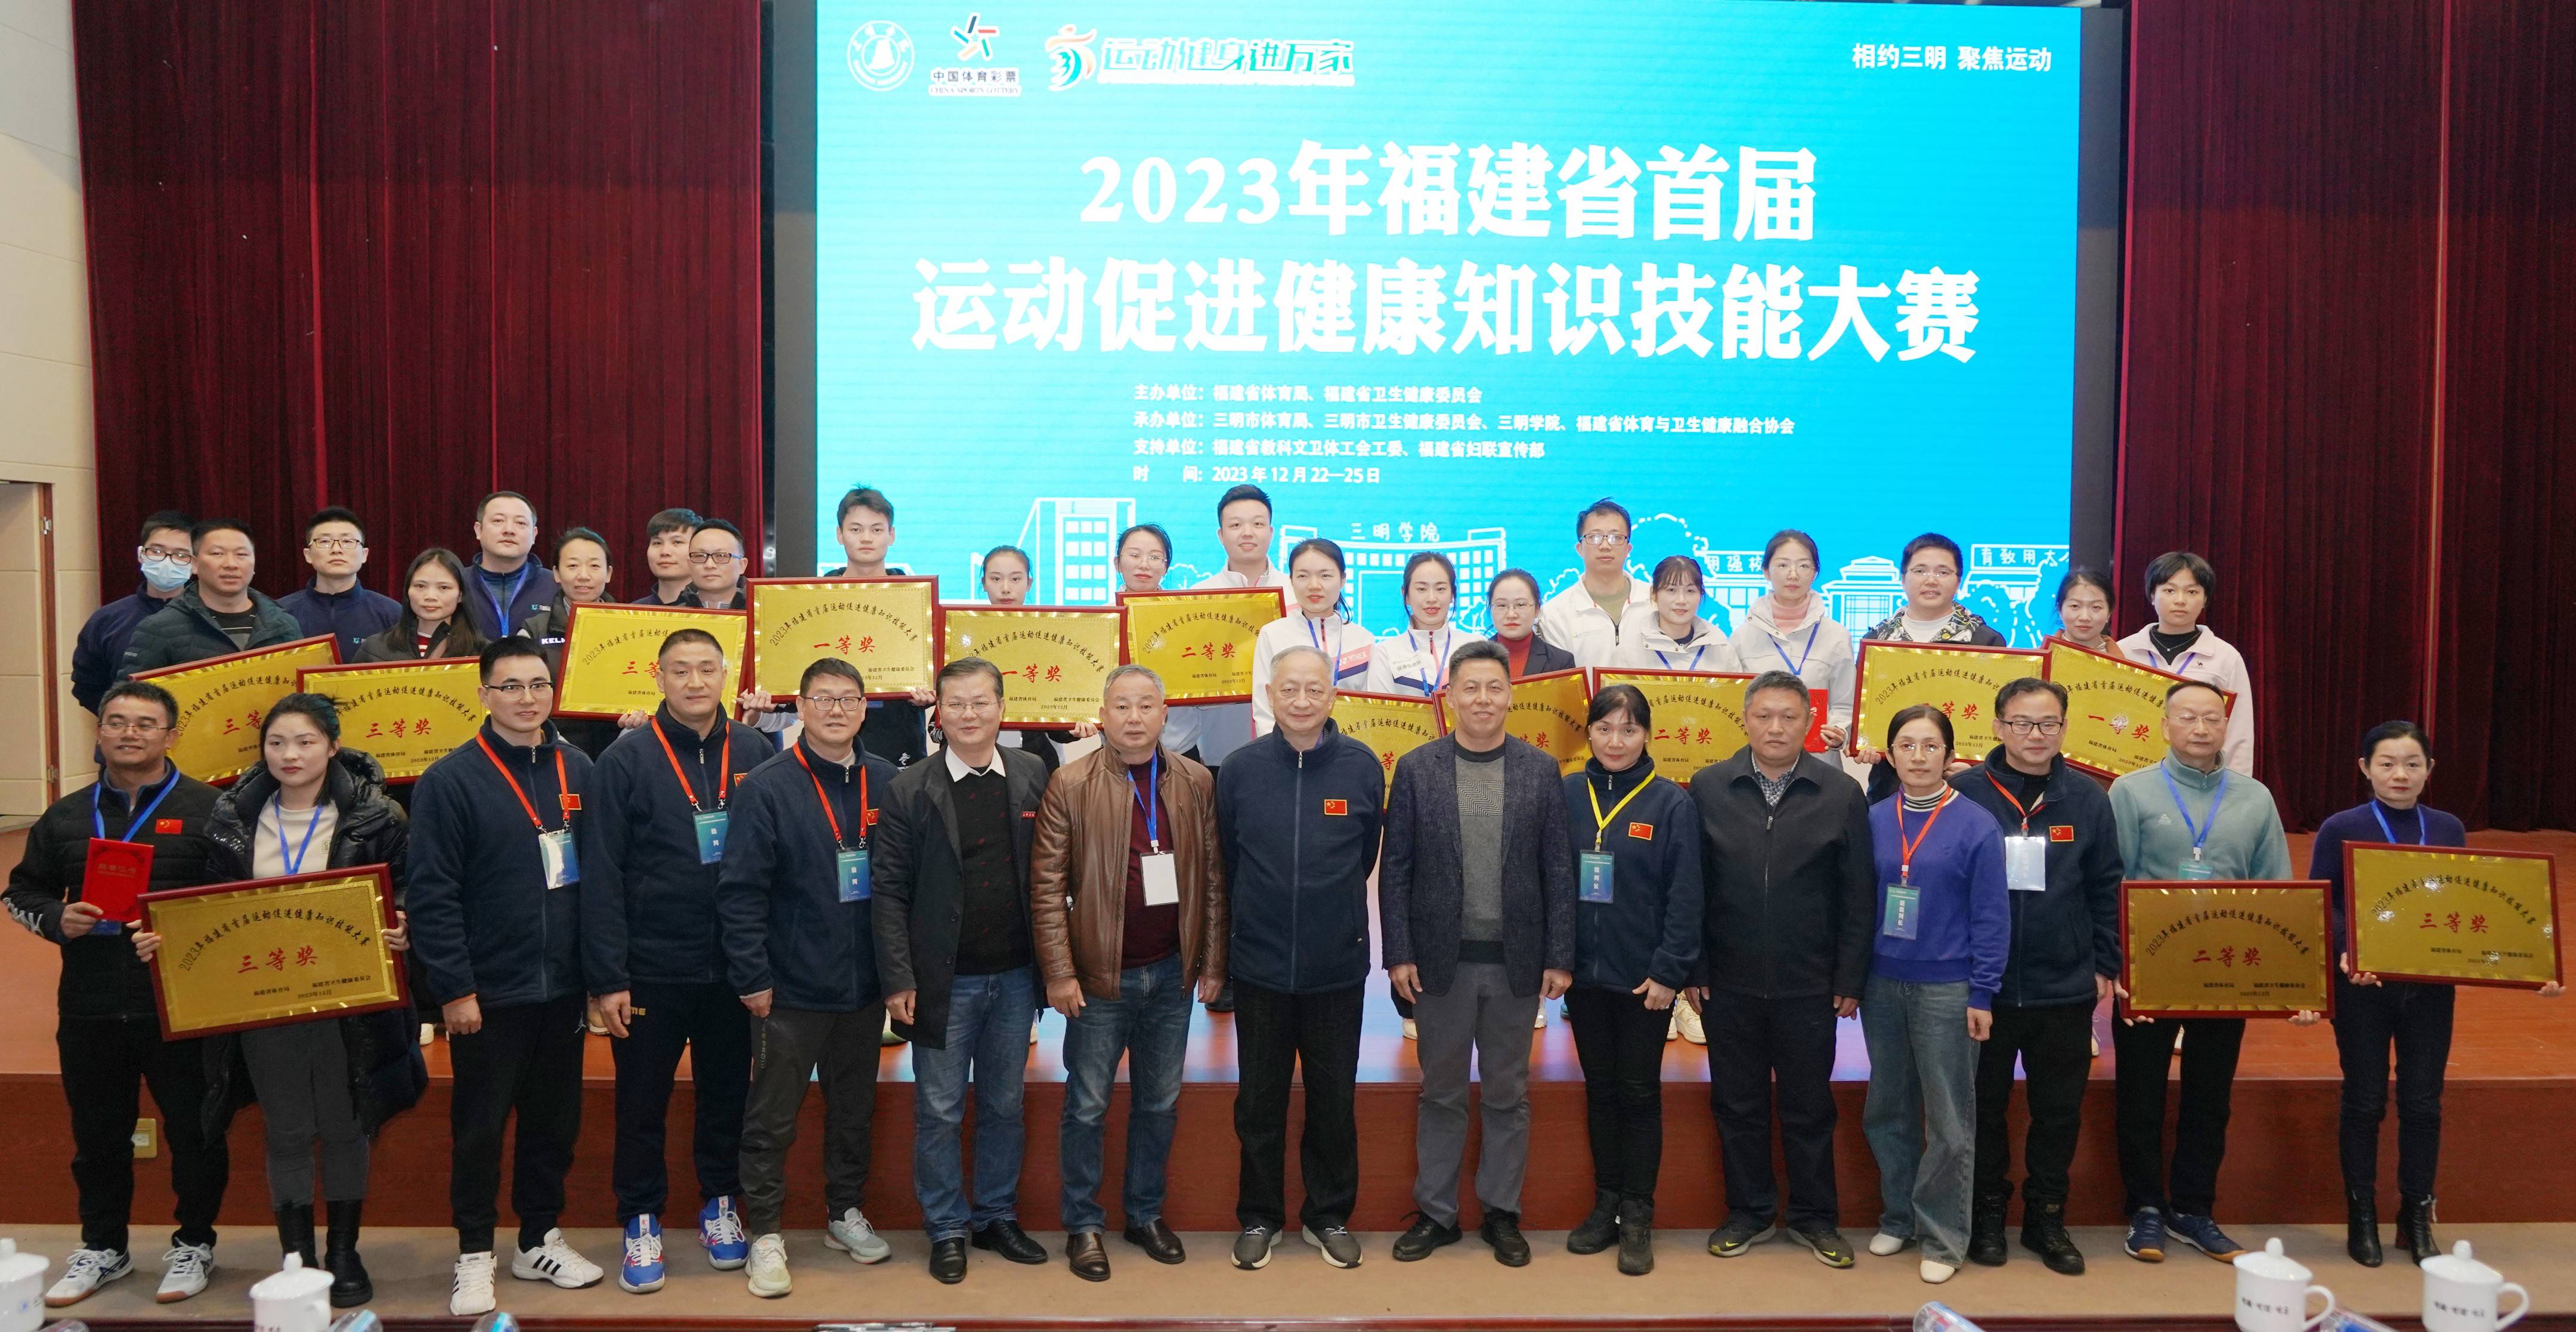 2023年福建省首届运动促进健康知识技能大赛成功举办